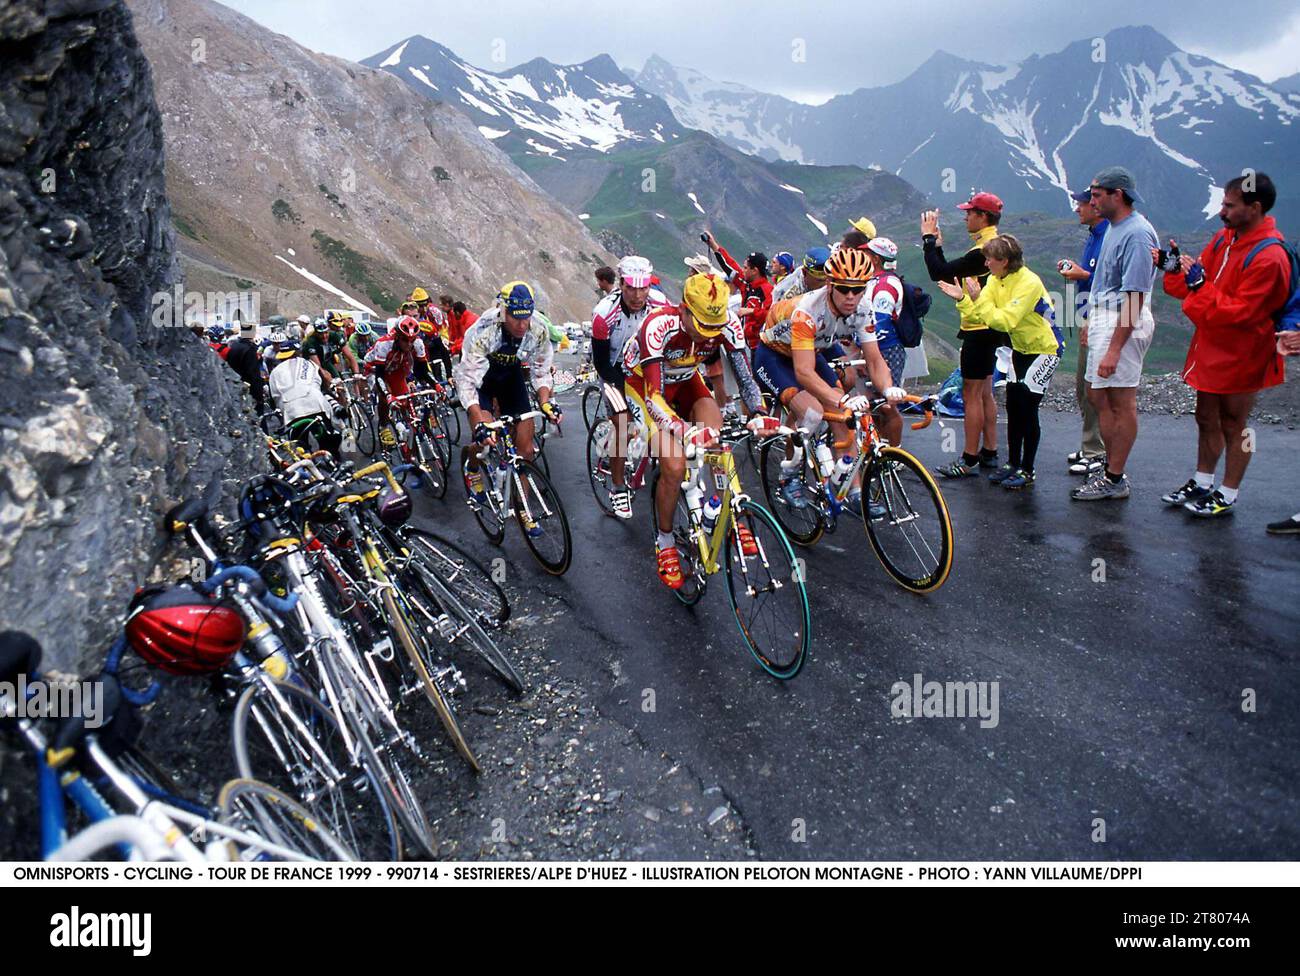 CYCLING - TOUR DE FRANCE 1999 - 990714 - SESTRIERES/ALPE D'HUEZ - ILLUSTRATION PELOTON MONTAGNE - PHOTO : YANN VILLAUME/DPPI # 20000085 109 Stock Photo